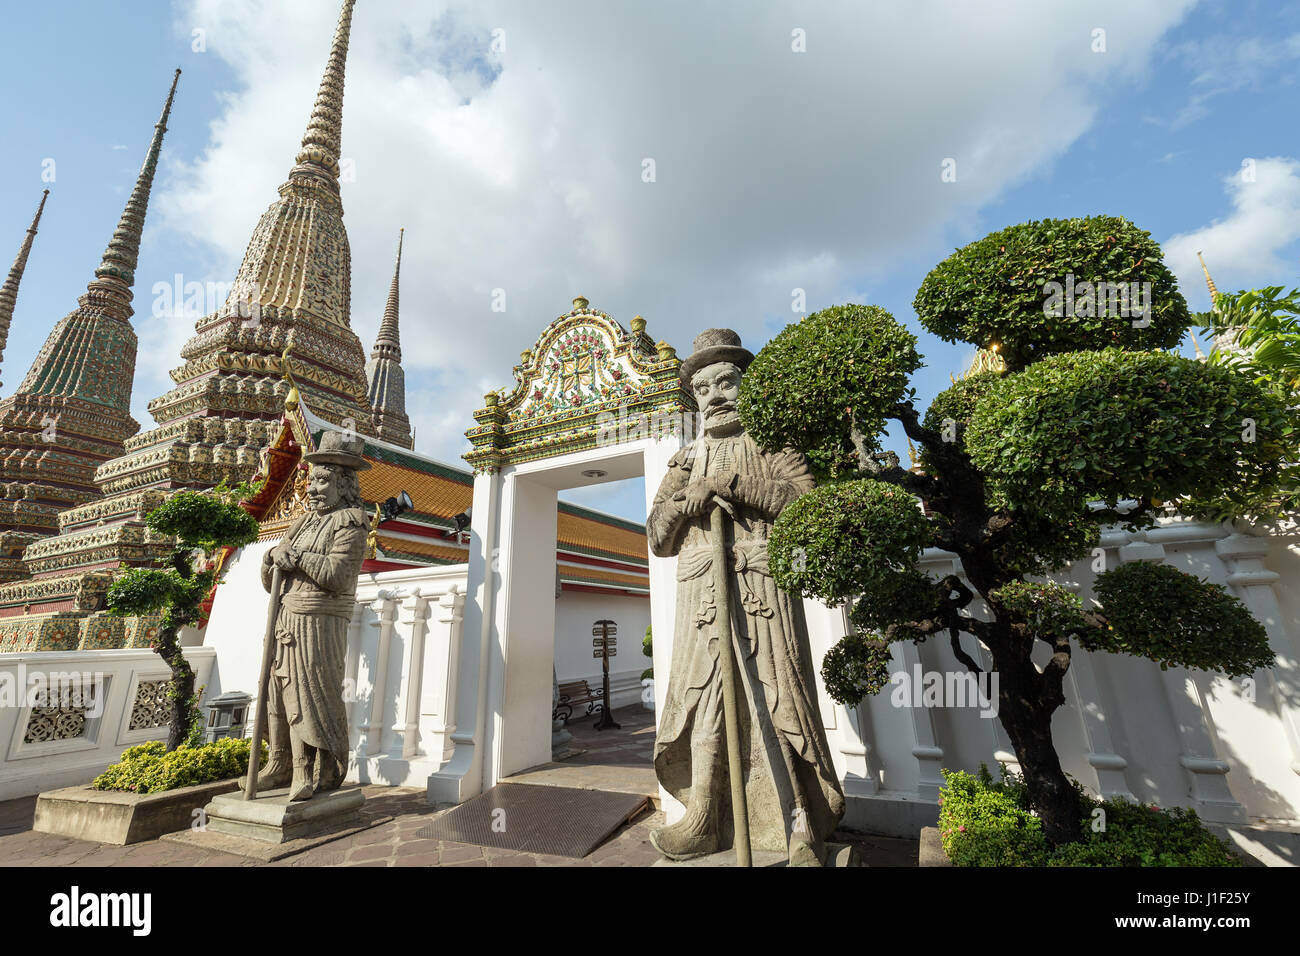 Deux grandes statues, arbres, chinois et porte à l'chedis Wat Pho (Po) complexe des temples de Bangkok, Thaïlande. Banque D'Images